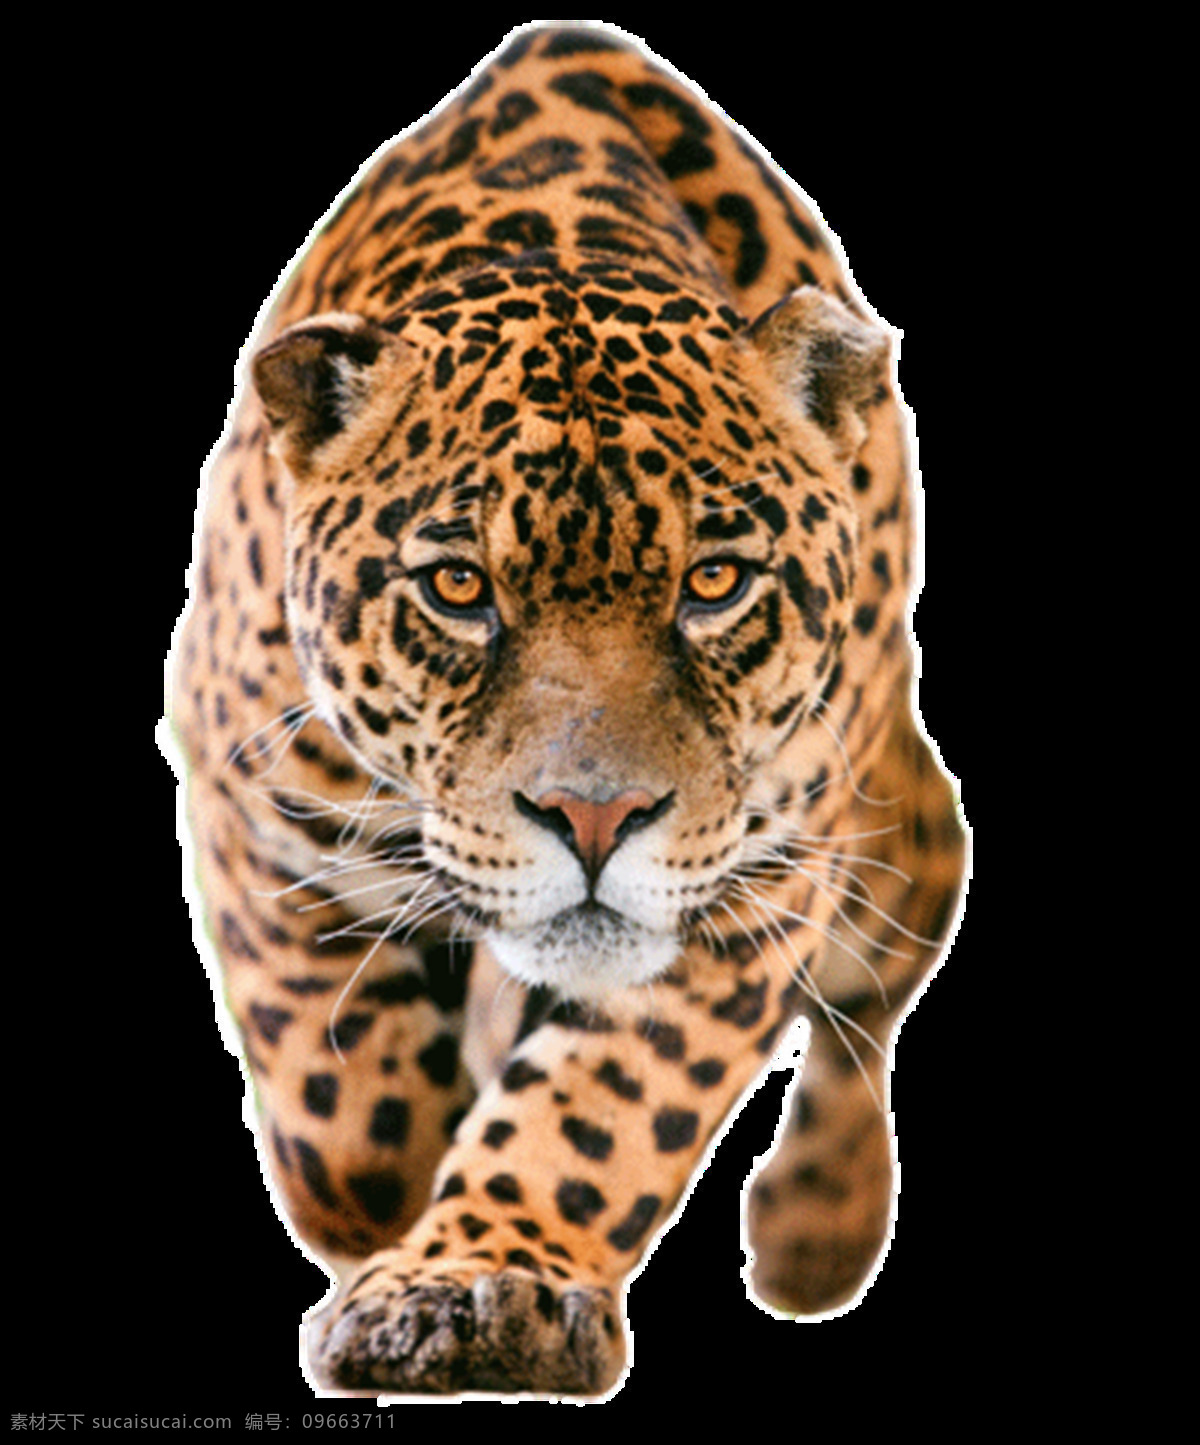 豹子图片 豹子 猎豹 豹 花豹 非洲豹 美洲豹 公豹 母豹 云豹 雪豹 虎豹 狮豹 png图 透明图 免扣图 透明背景 透明底 抠图 生物世界 野生动物